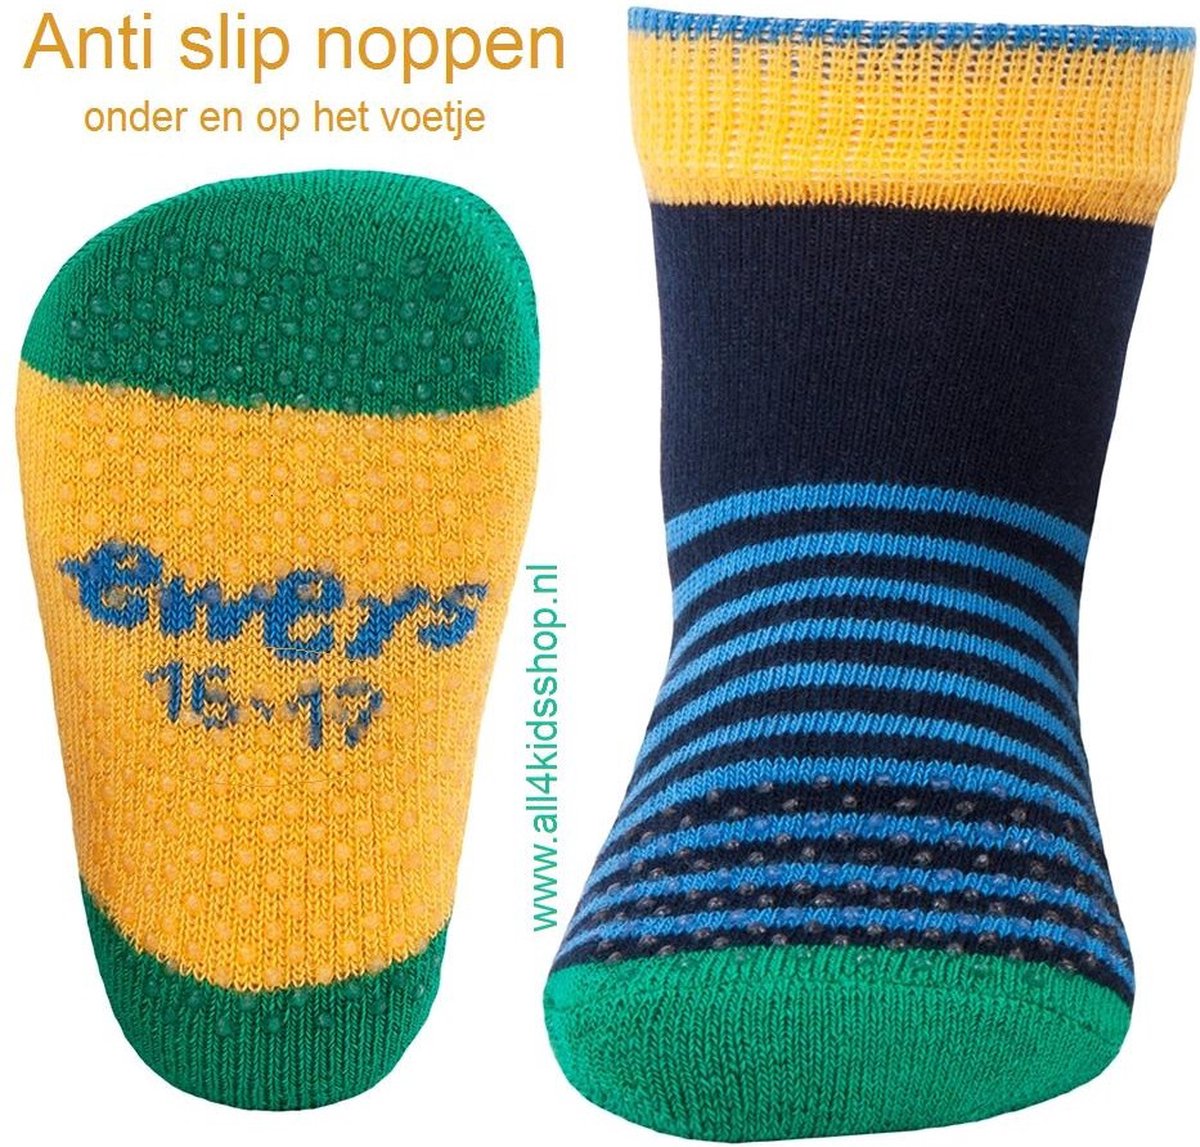 Ewers baby antislip sokjes - anti slip sokken - Krabbelfix - blauw / groen / geel gestreept - maat 17-18